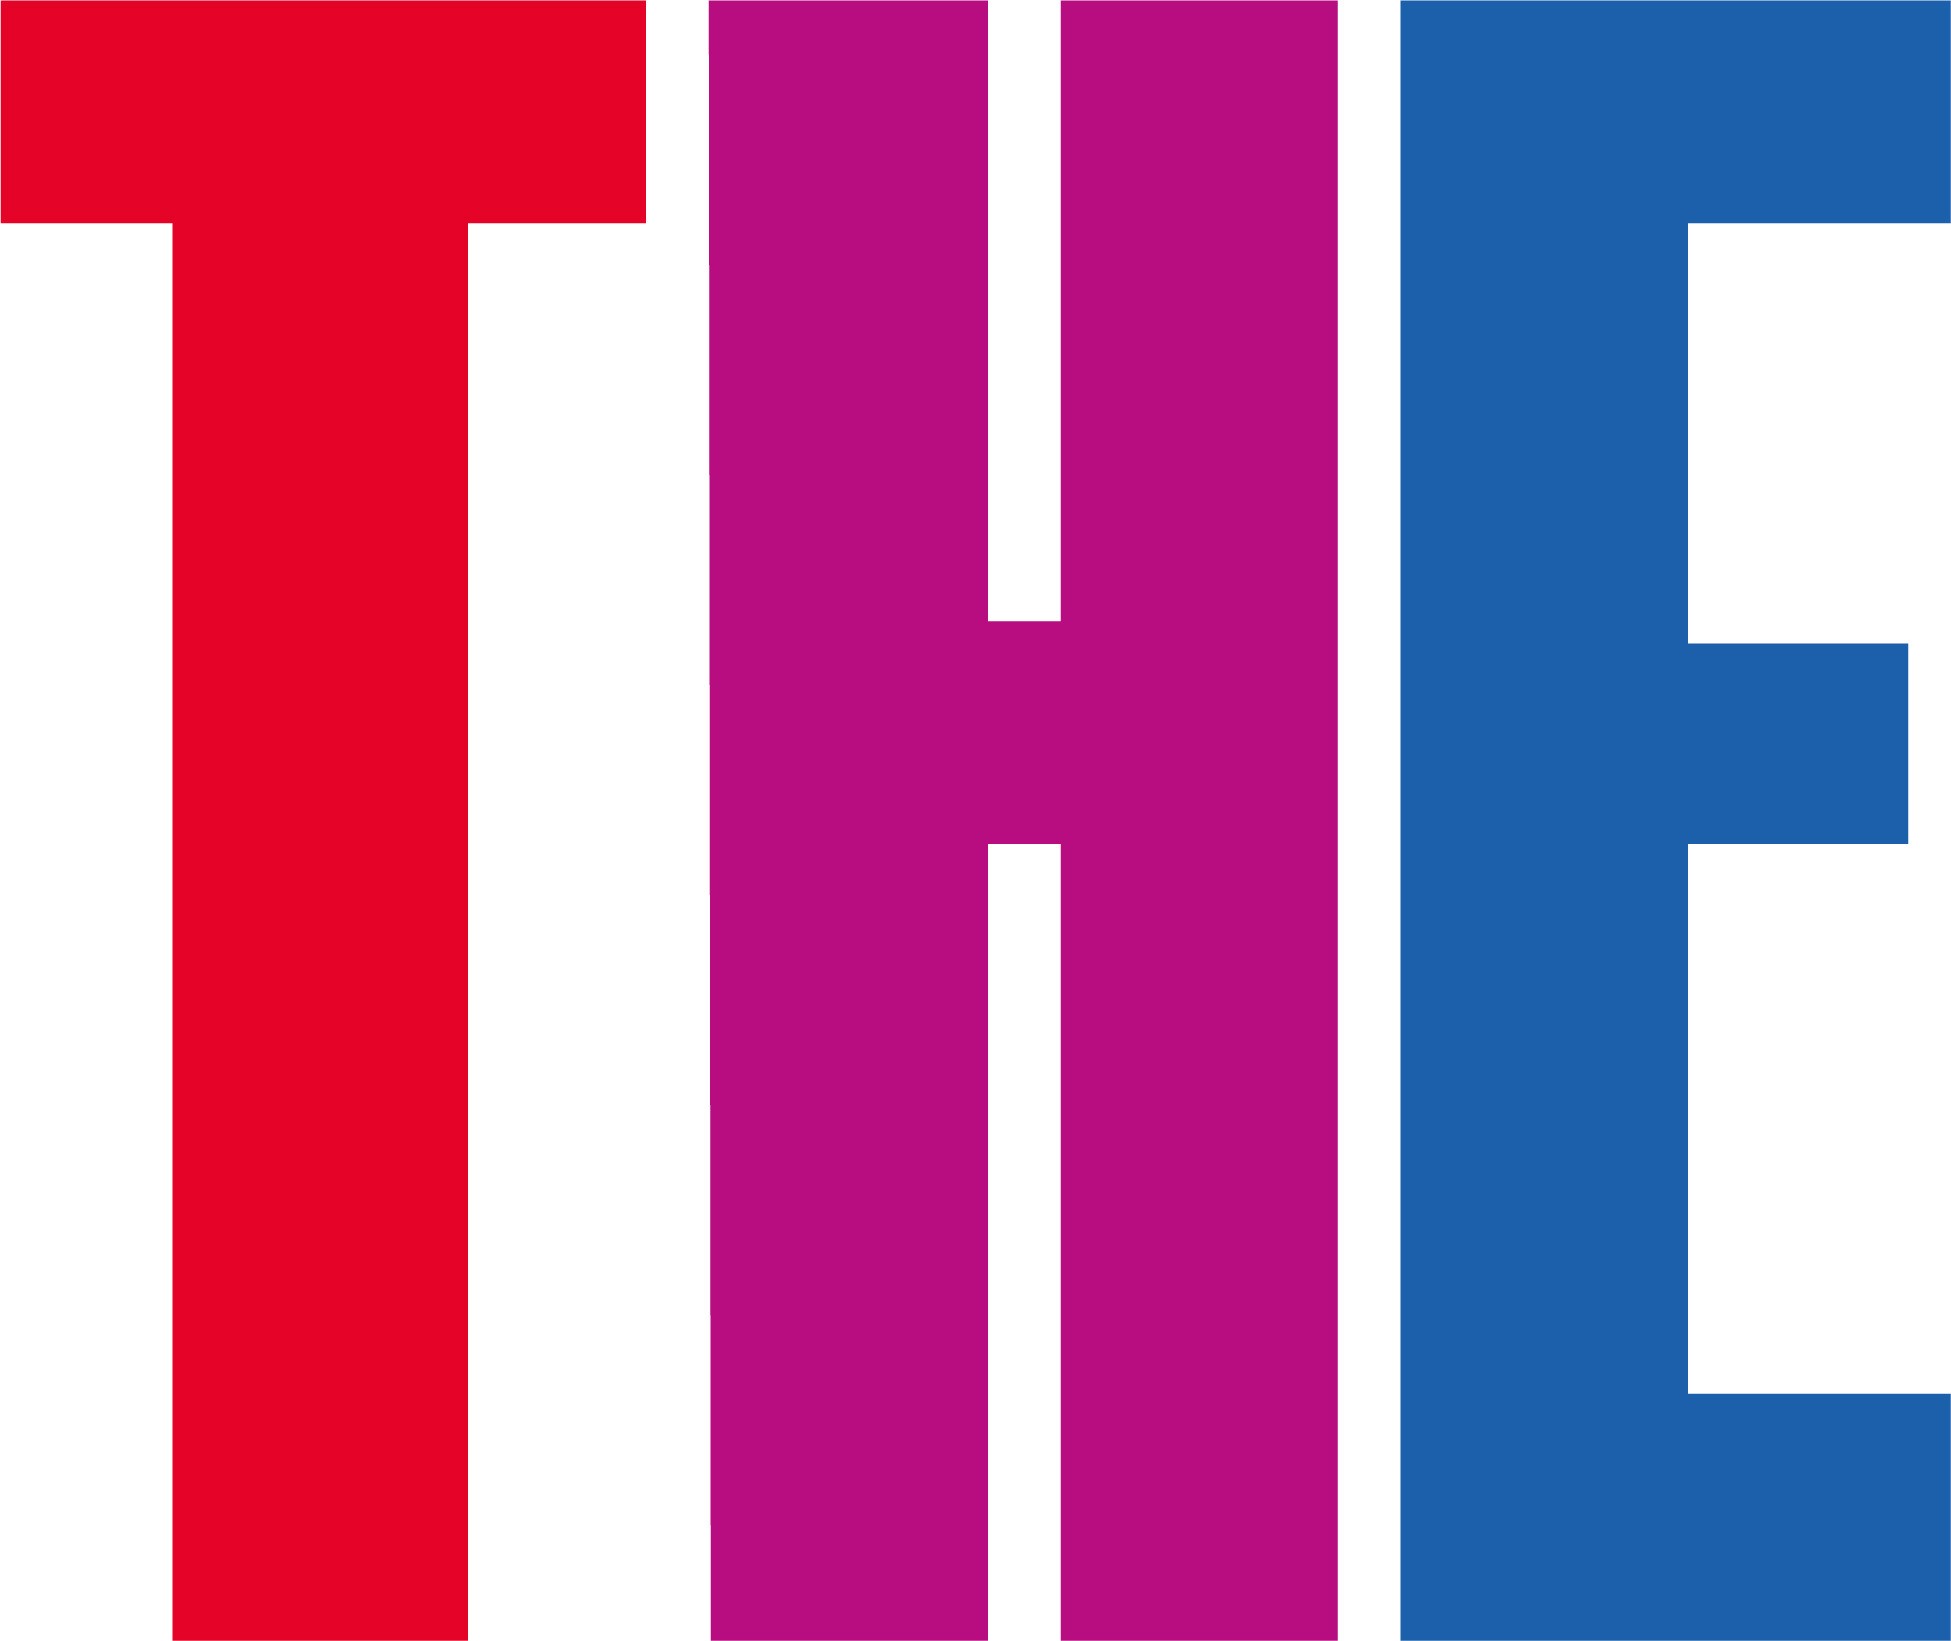 Times Higher Education logosu, kırmızı bir T, mor H ve mavi E.